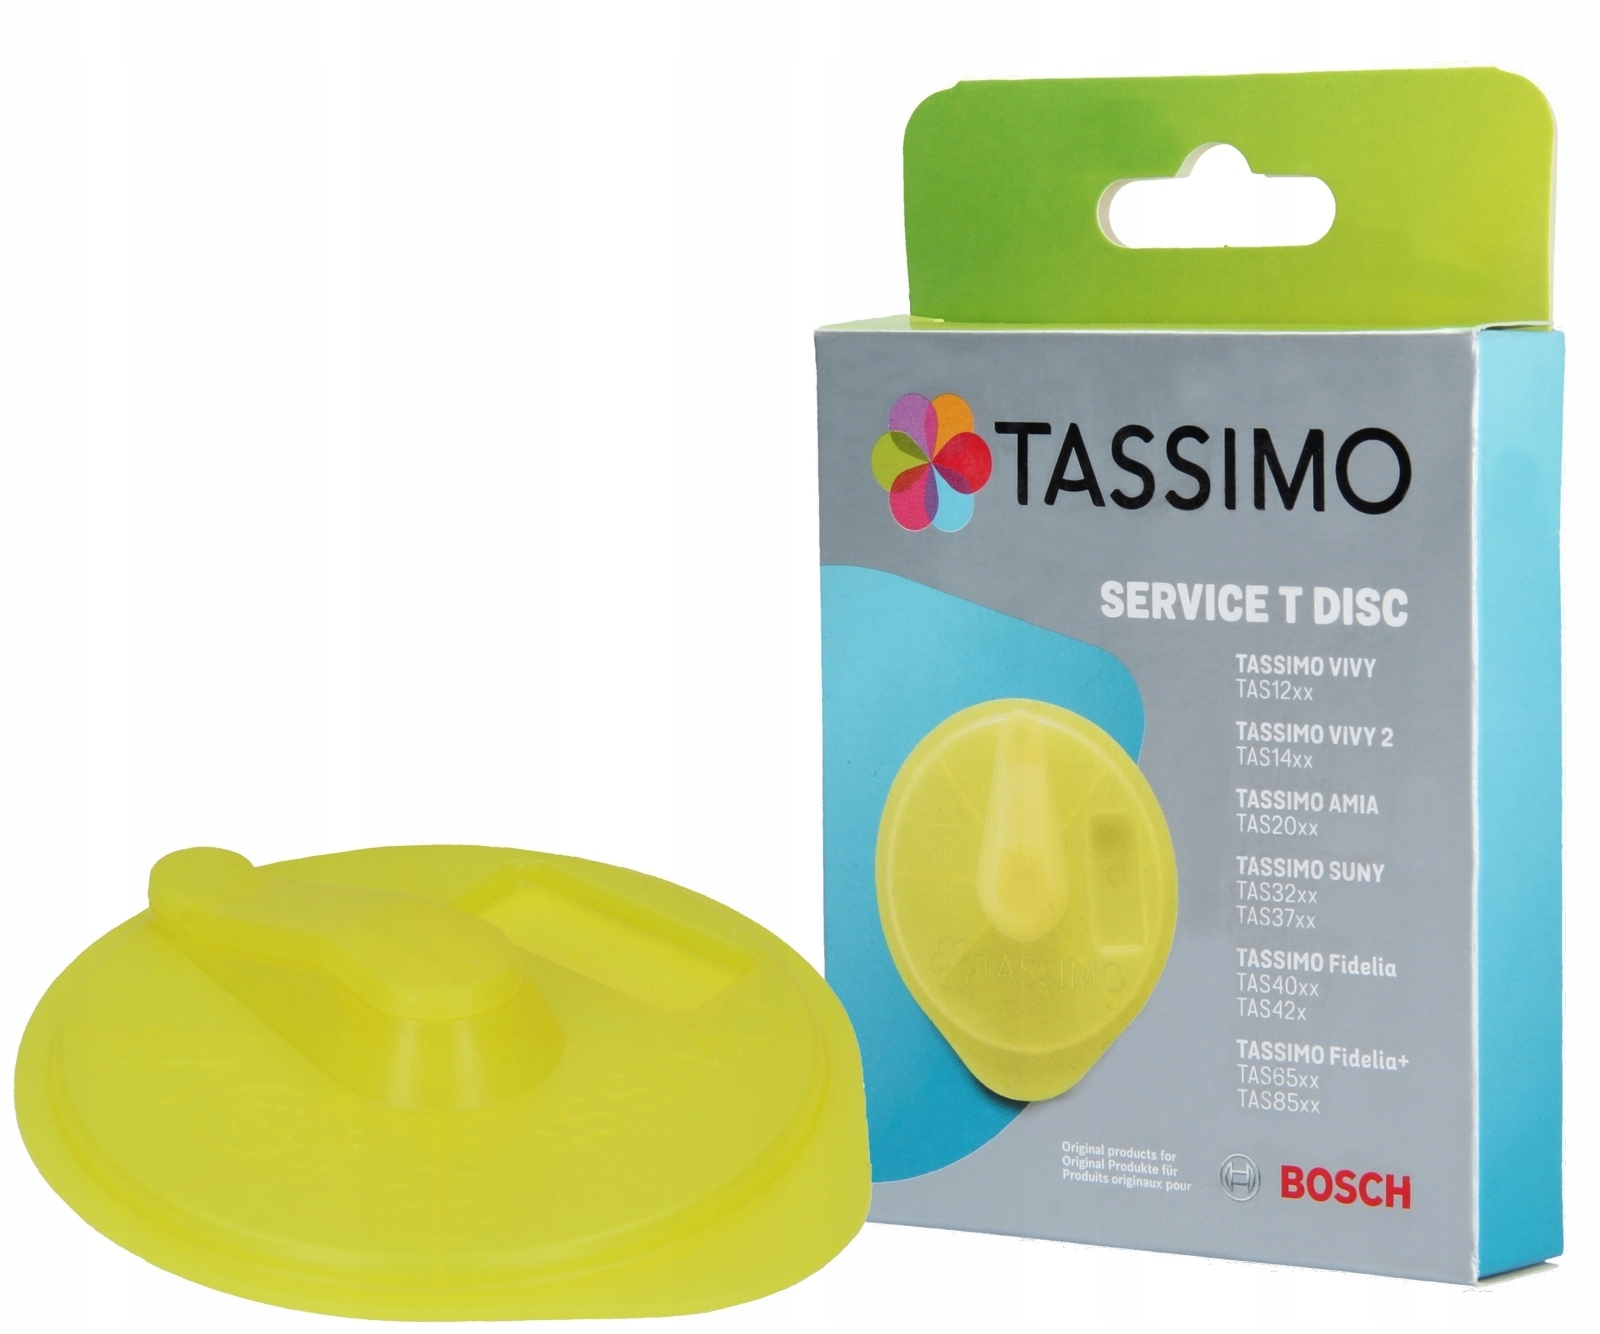 

Dysk czyszczący ekspresów Bosch Tassimo